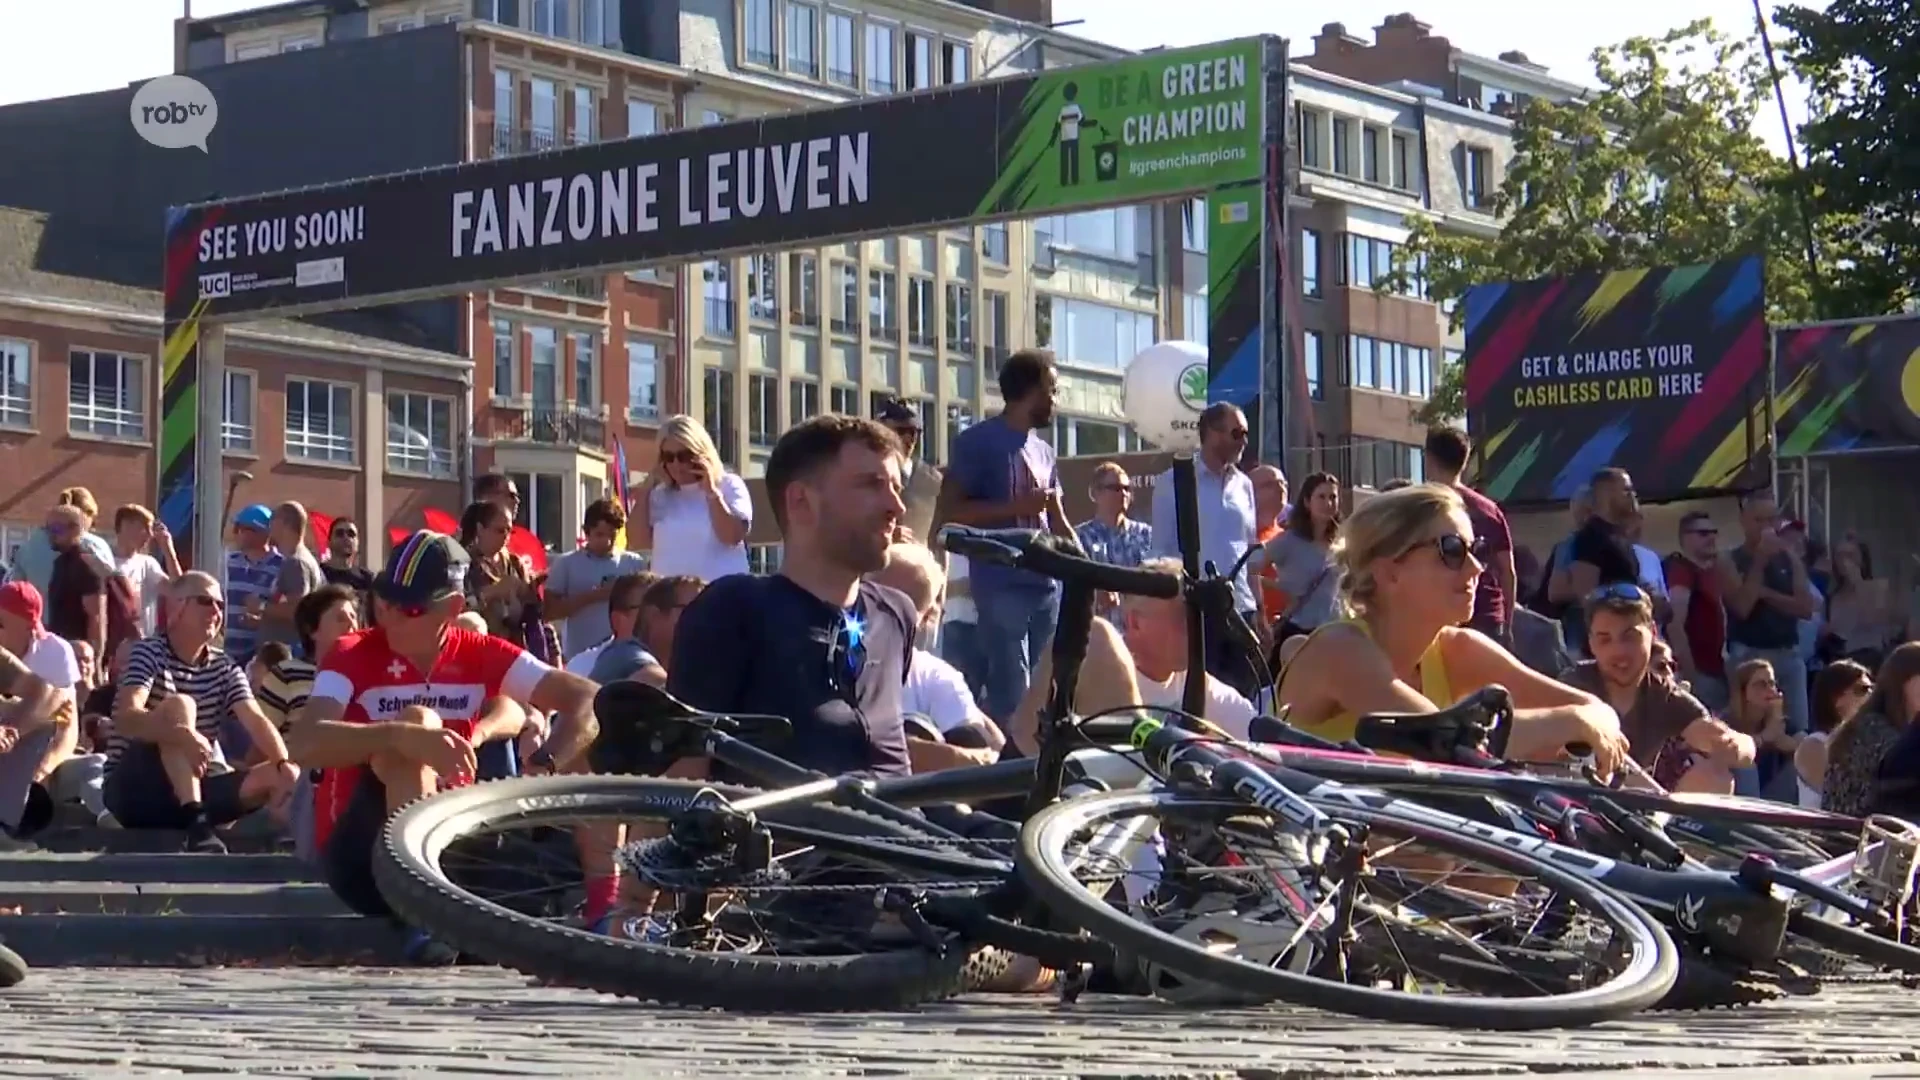 Honderden mensen zakten vanmiddag af naar de fanzone op het Ladeuzeplein in Leuven